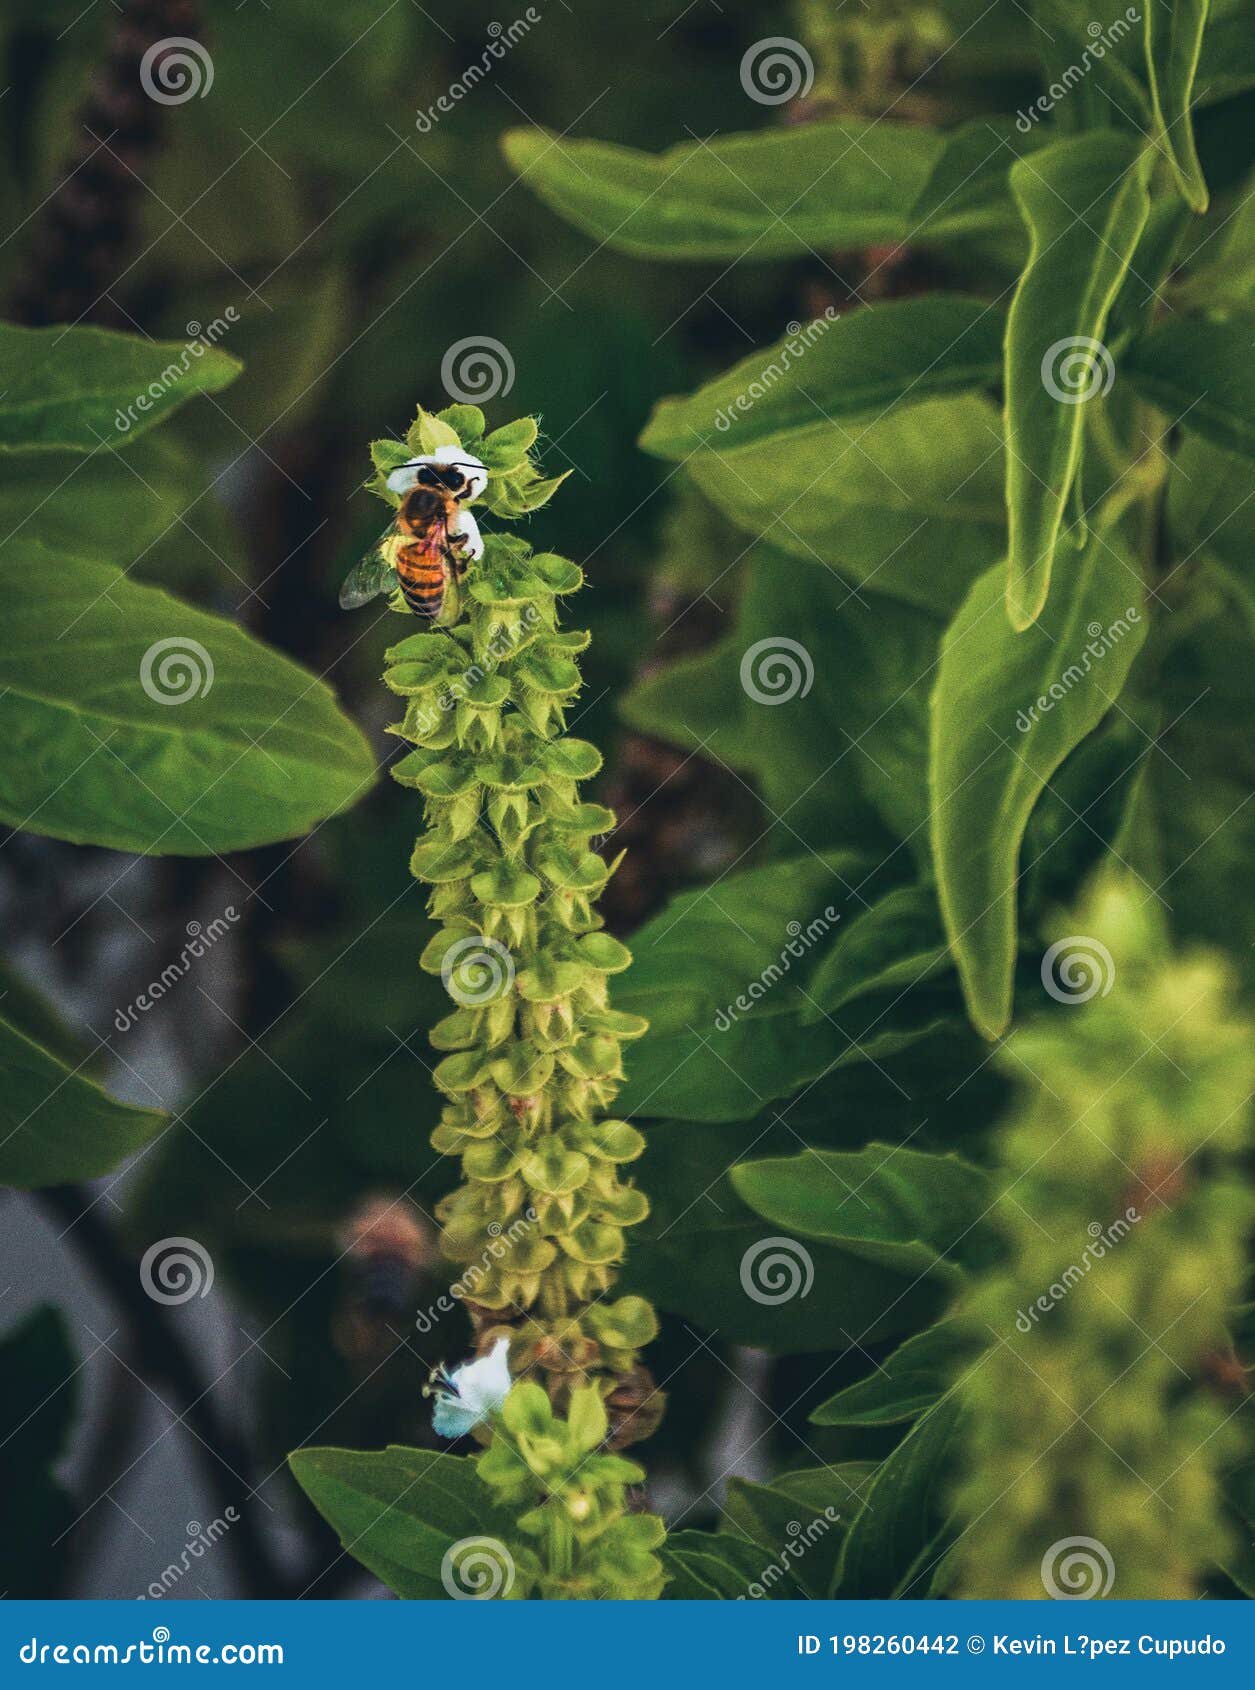 abeja polinizadora comiendo